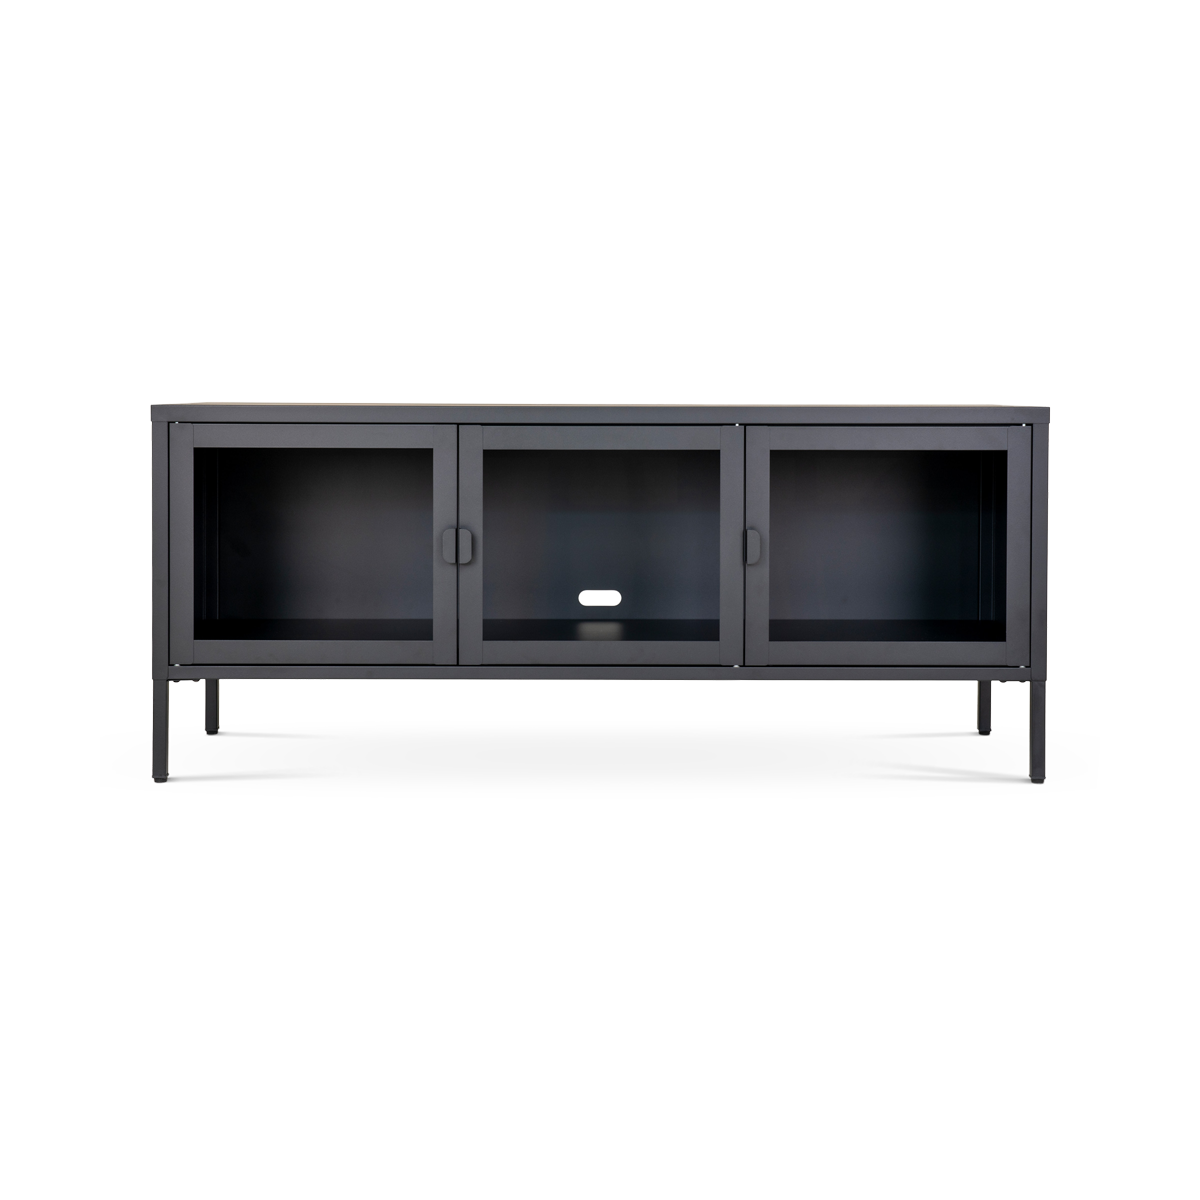 Ellis metalen tv meubel zwart - 130 x 40 cm